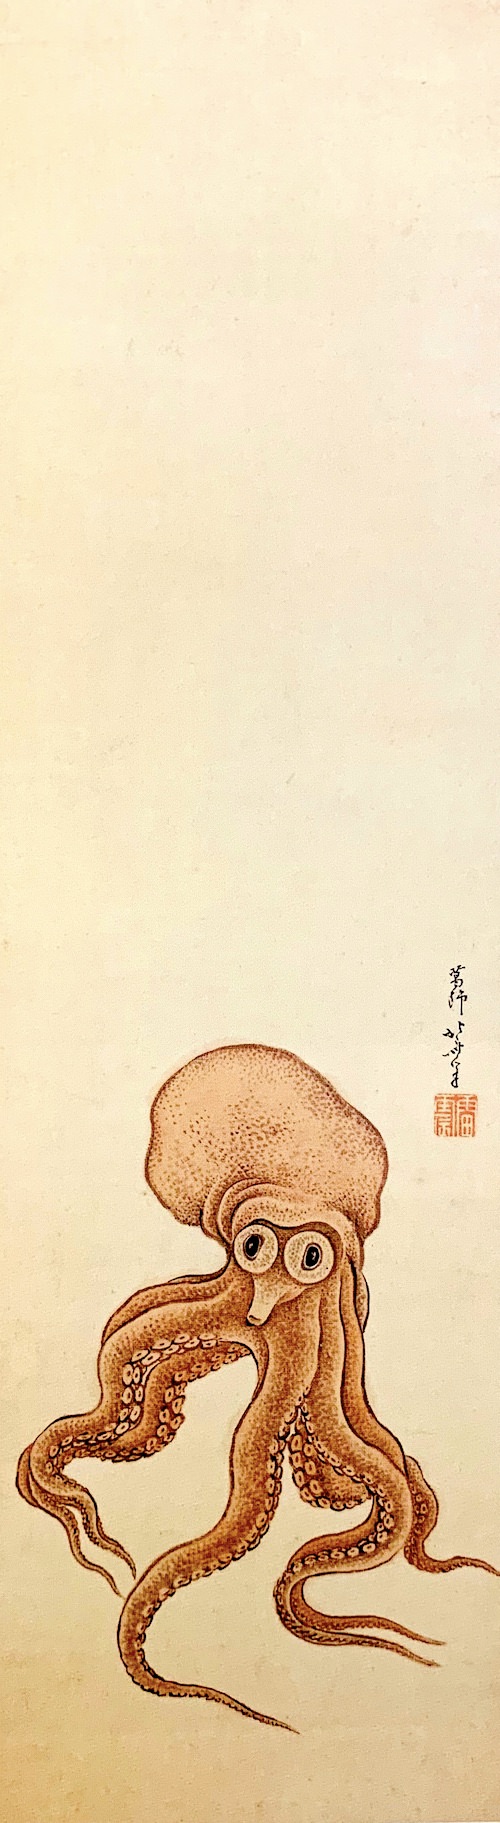 『蛸図』（葛飾北斎 画/1811年頃）